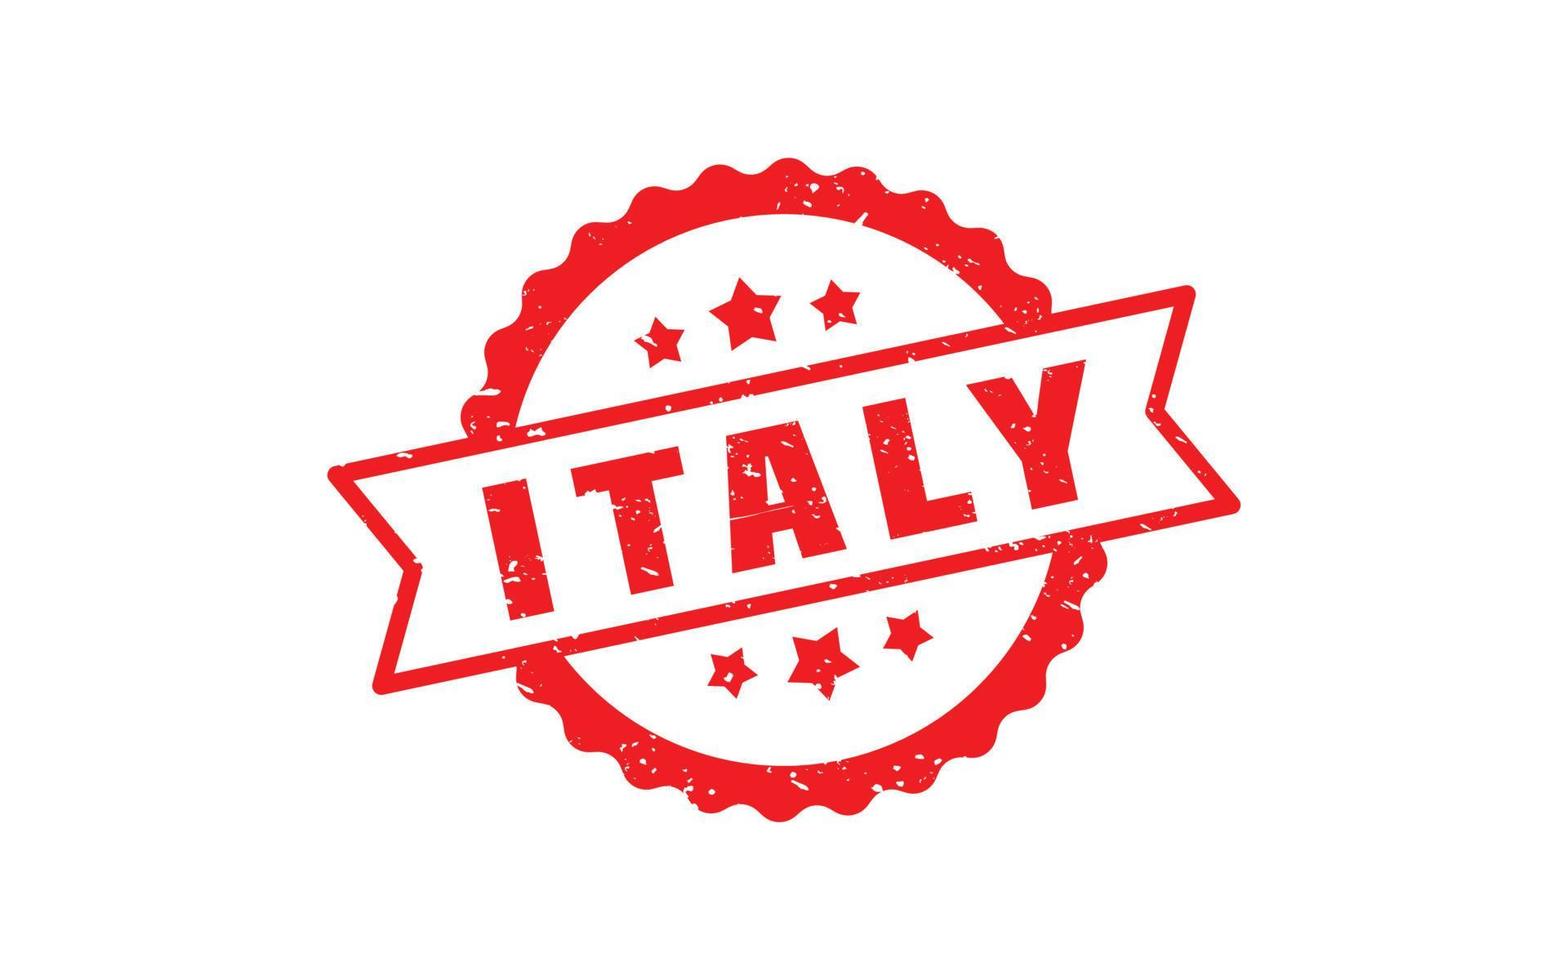 Italien Stempelgummi mit Grunge-Stil auf weißem Hintergrund vektor